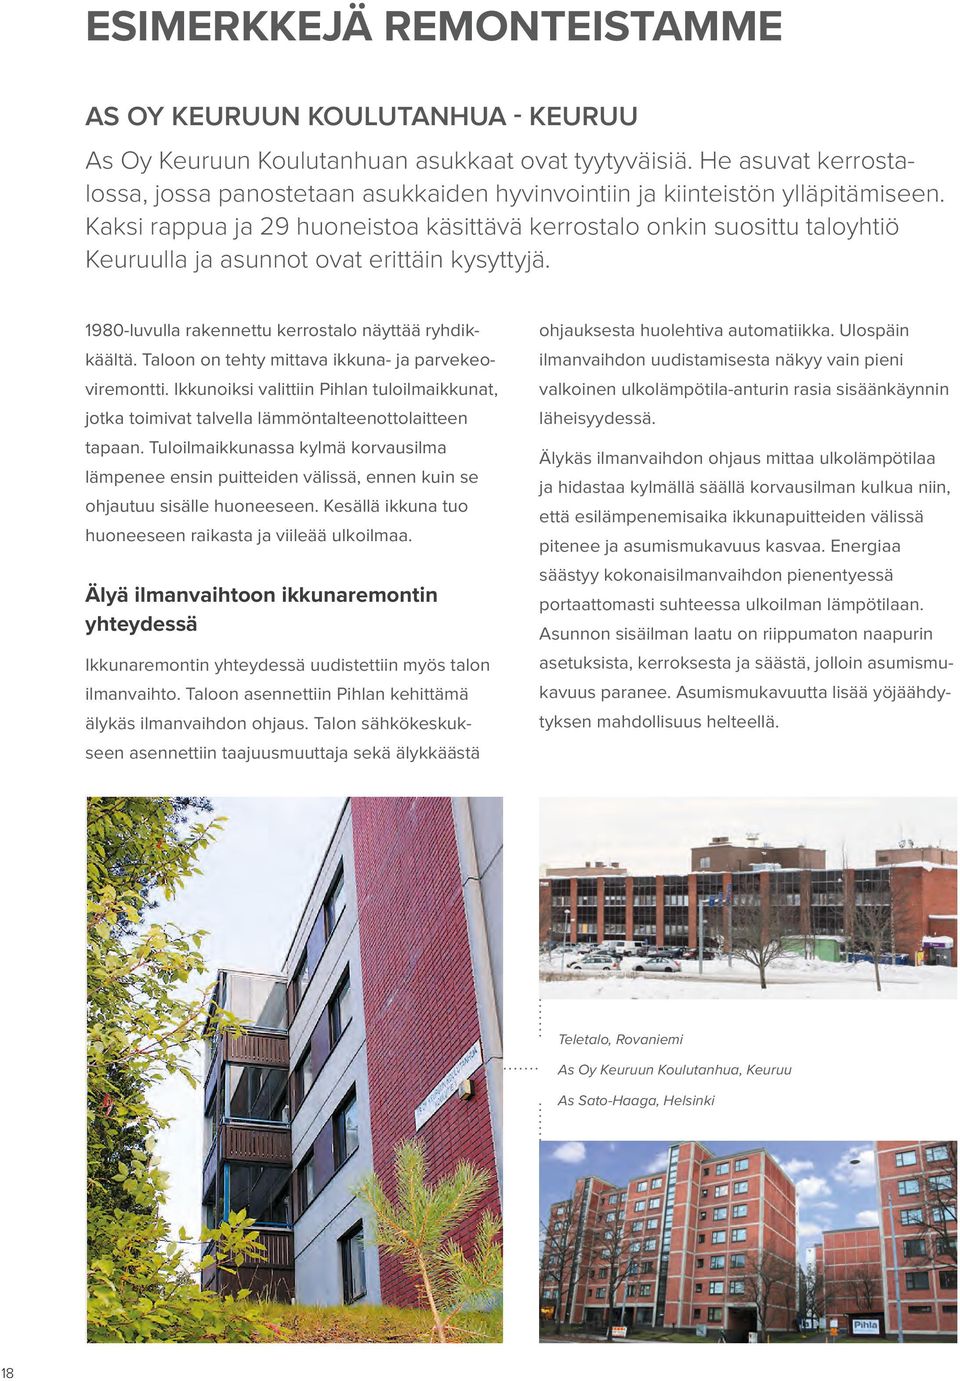 Kaksi rappua ja 29 huoneistoa käsittävä kerrostalo onkin suosittu taloyhtiö Keuruulla ja asunnot ovat erittäin kysyttyjä. 1980-luvulla rakennettu kerrostalo näyttää ryhdikkäältä.